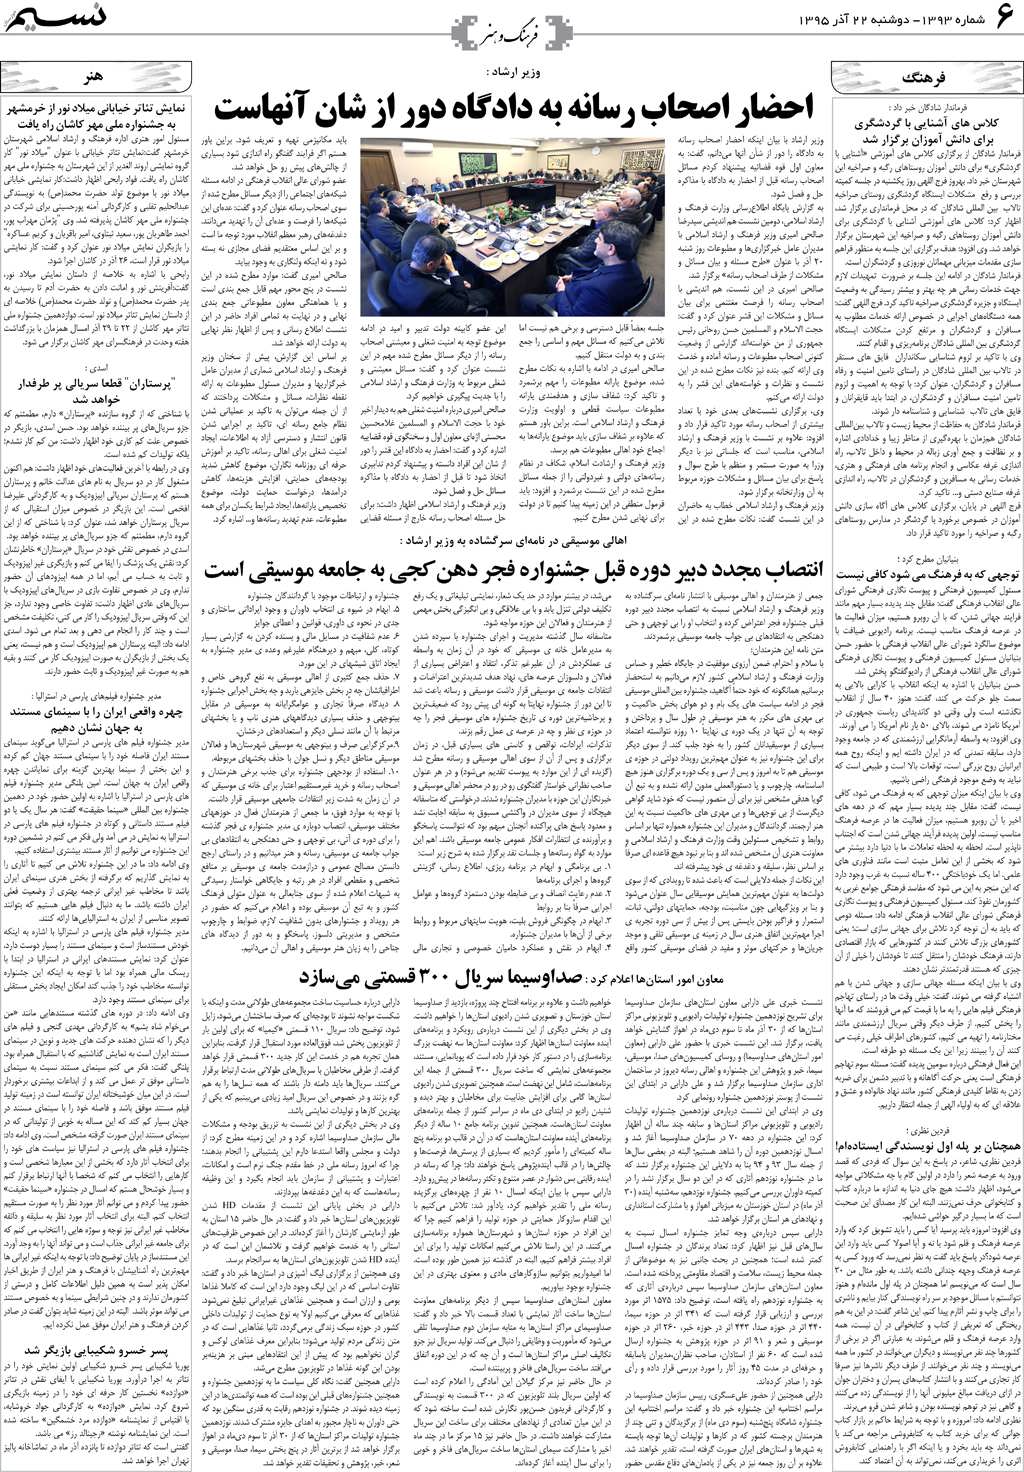 صفحه فرهنگ و هنر روزنامه نسیم شماره 1393